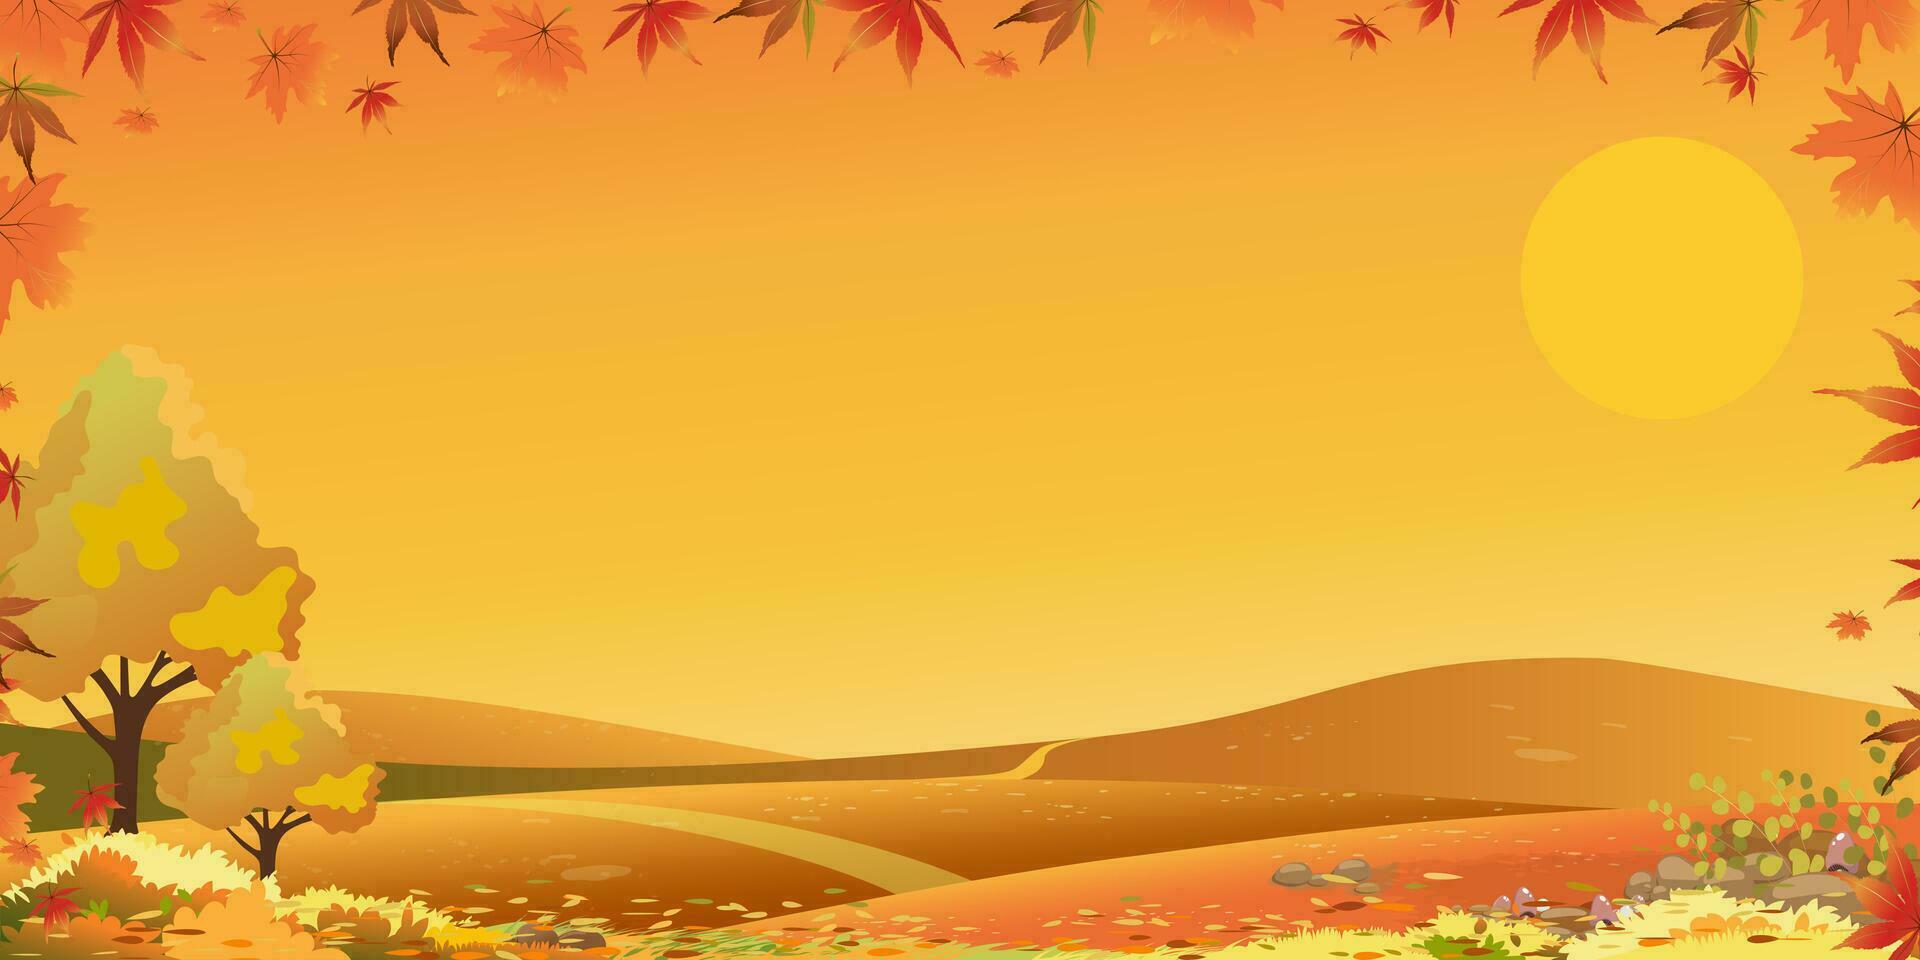 höst landskap av bruka fält med blå himmel bakgrund, horisont falla säsong i landsbygden med moln himmel och sol, berg, gräs landa i orange lövverk, vektor vertikal baner för tacksägelse bakgrund